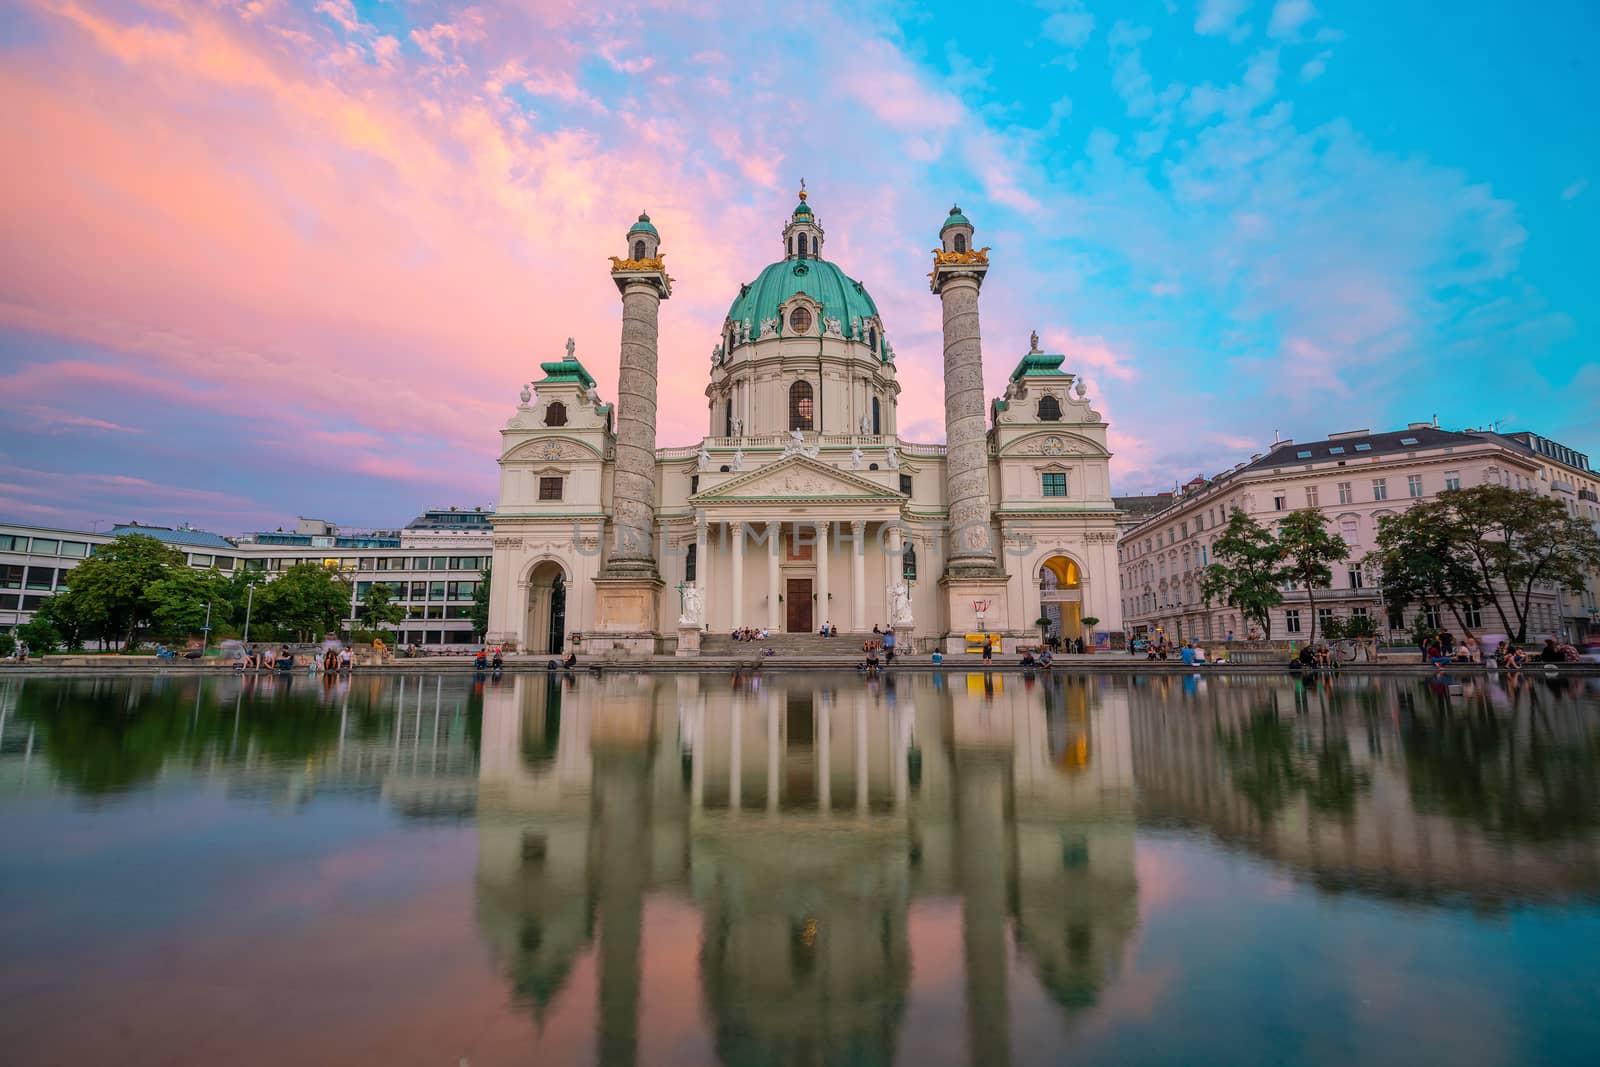 St. Charles's Church (Karlskirche) in Vienna, Austria by f11photo